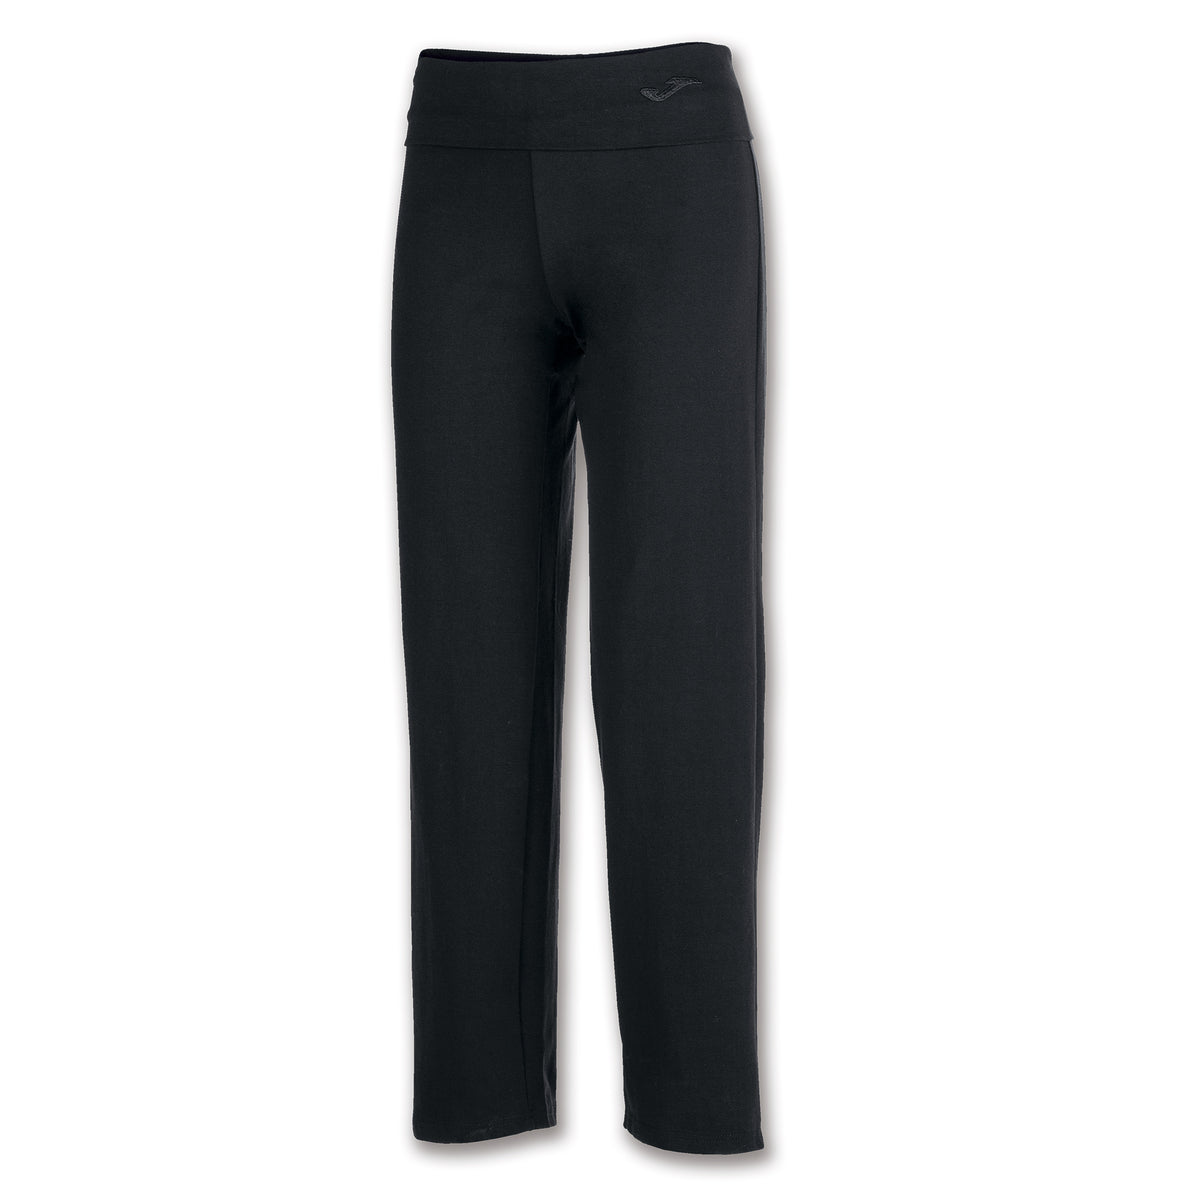 Danskin Now Gray Sweatpants Size XL - 10% off